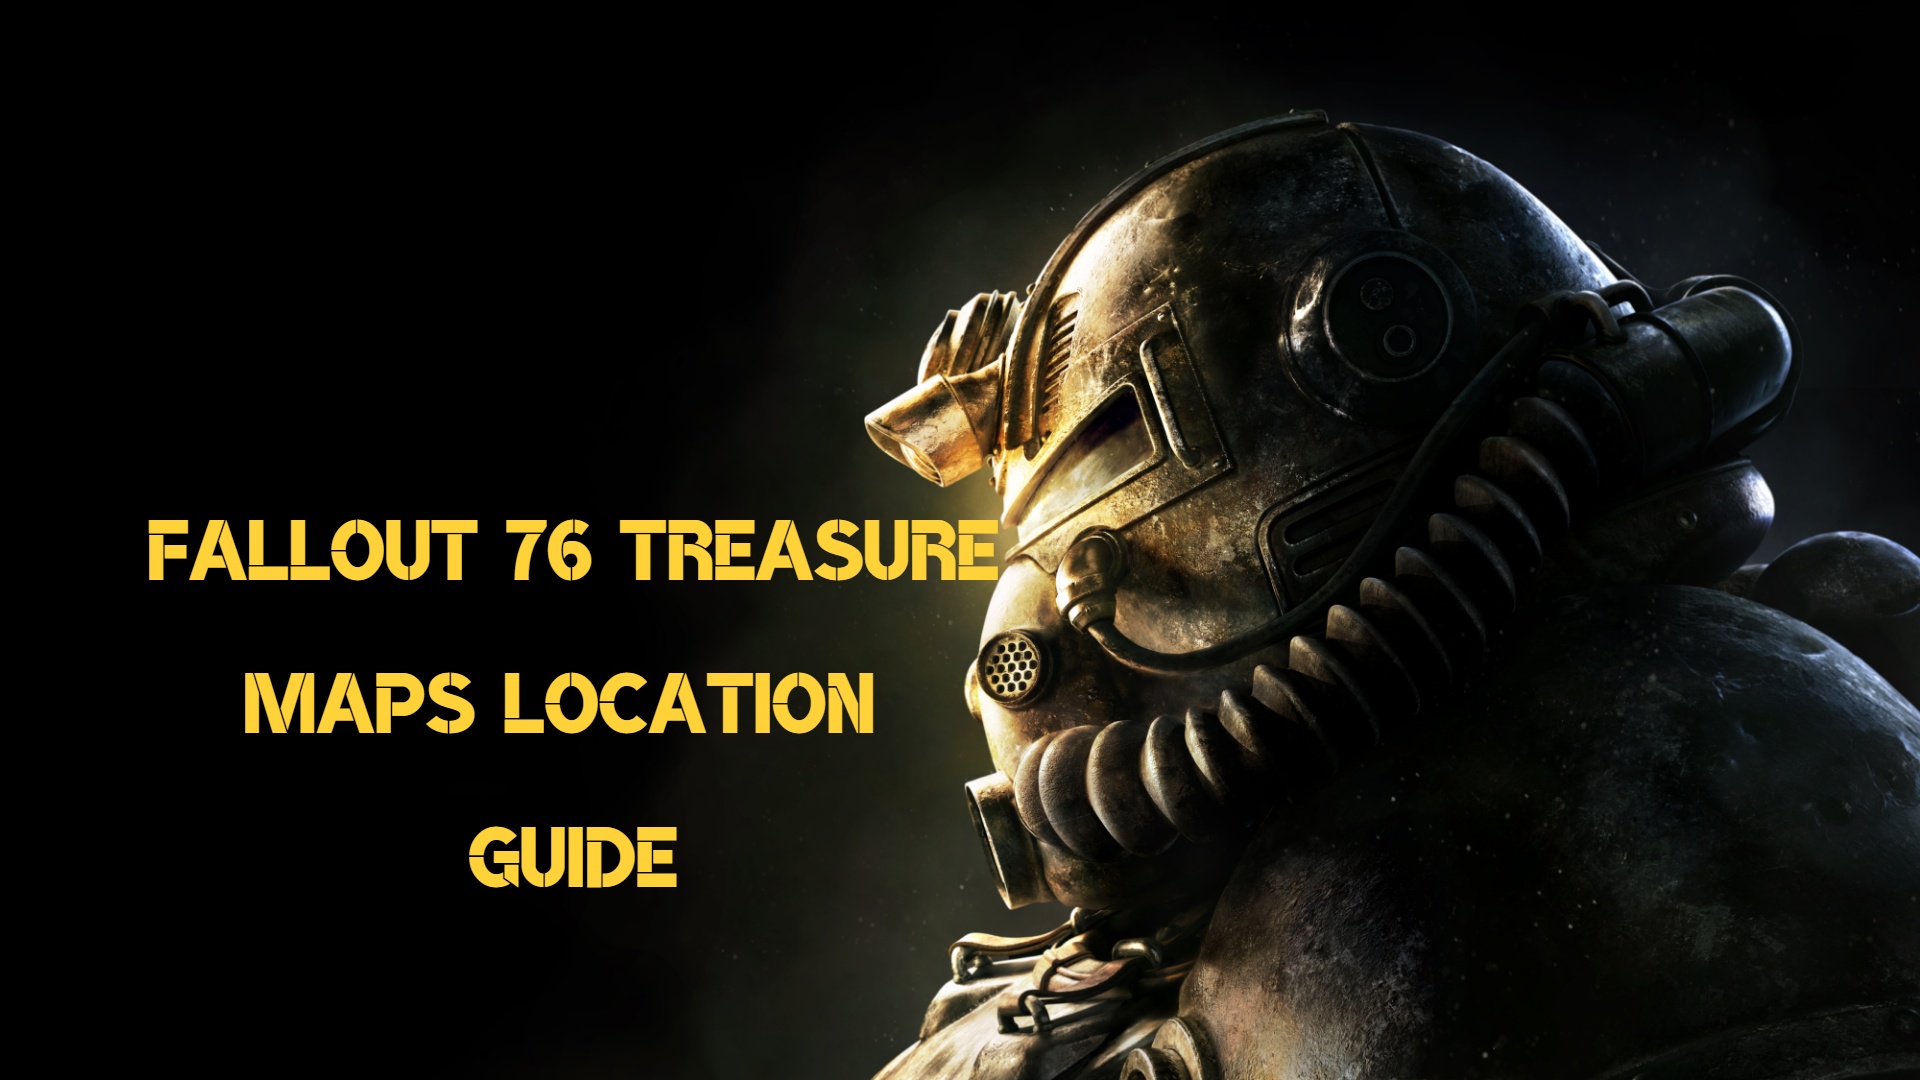 Fallout 76 Treasure Maps Location Guides 1 